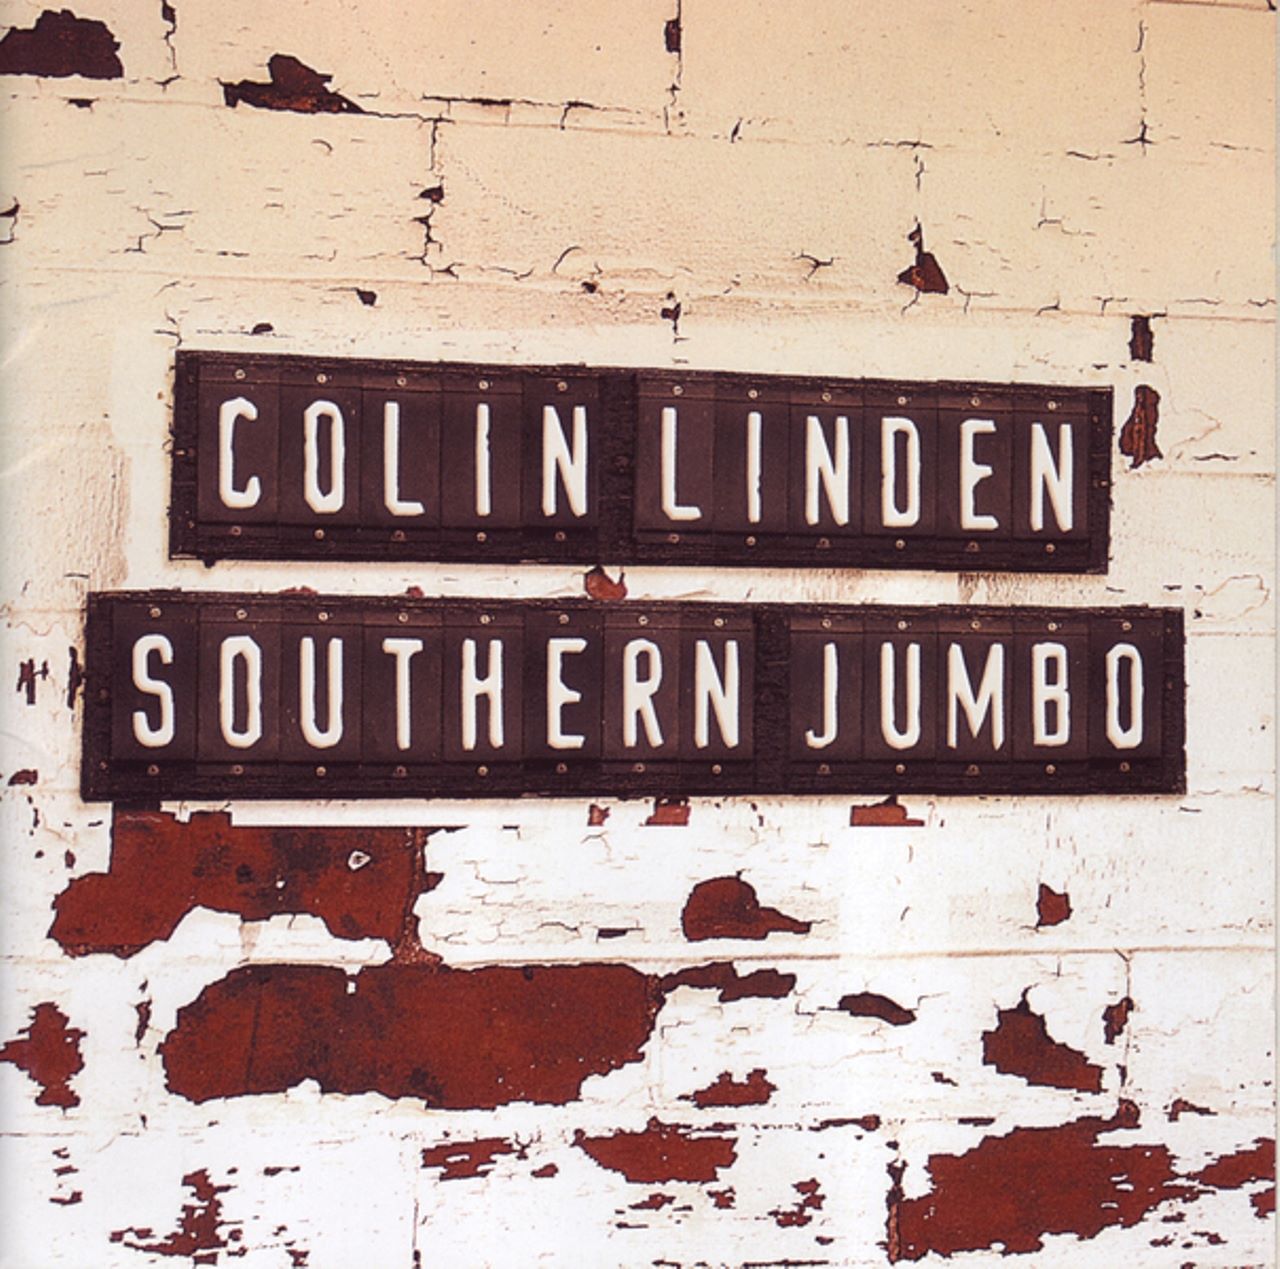 Recensione album Colin Linden – “Southern Jumbo” a cura di Salvatore Esposito, pubblicata sulla rivista JAM n. 115, 2005